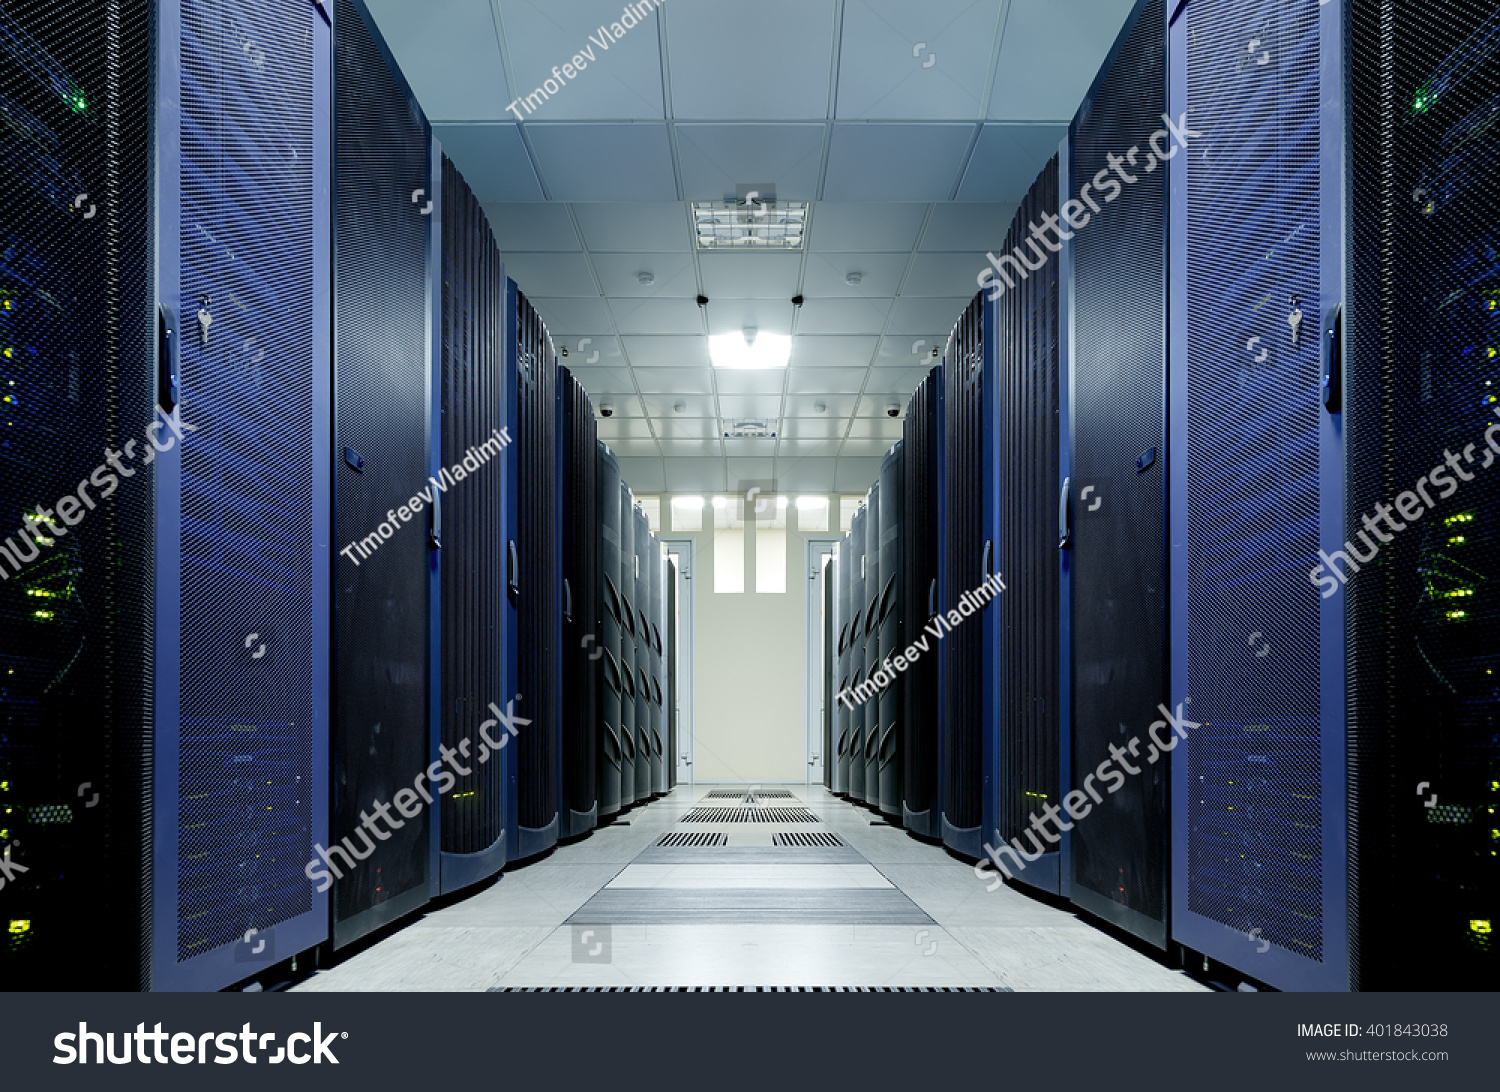 server room with modern mainframe equipment in data center #401843038